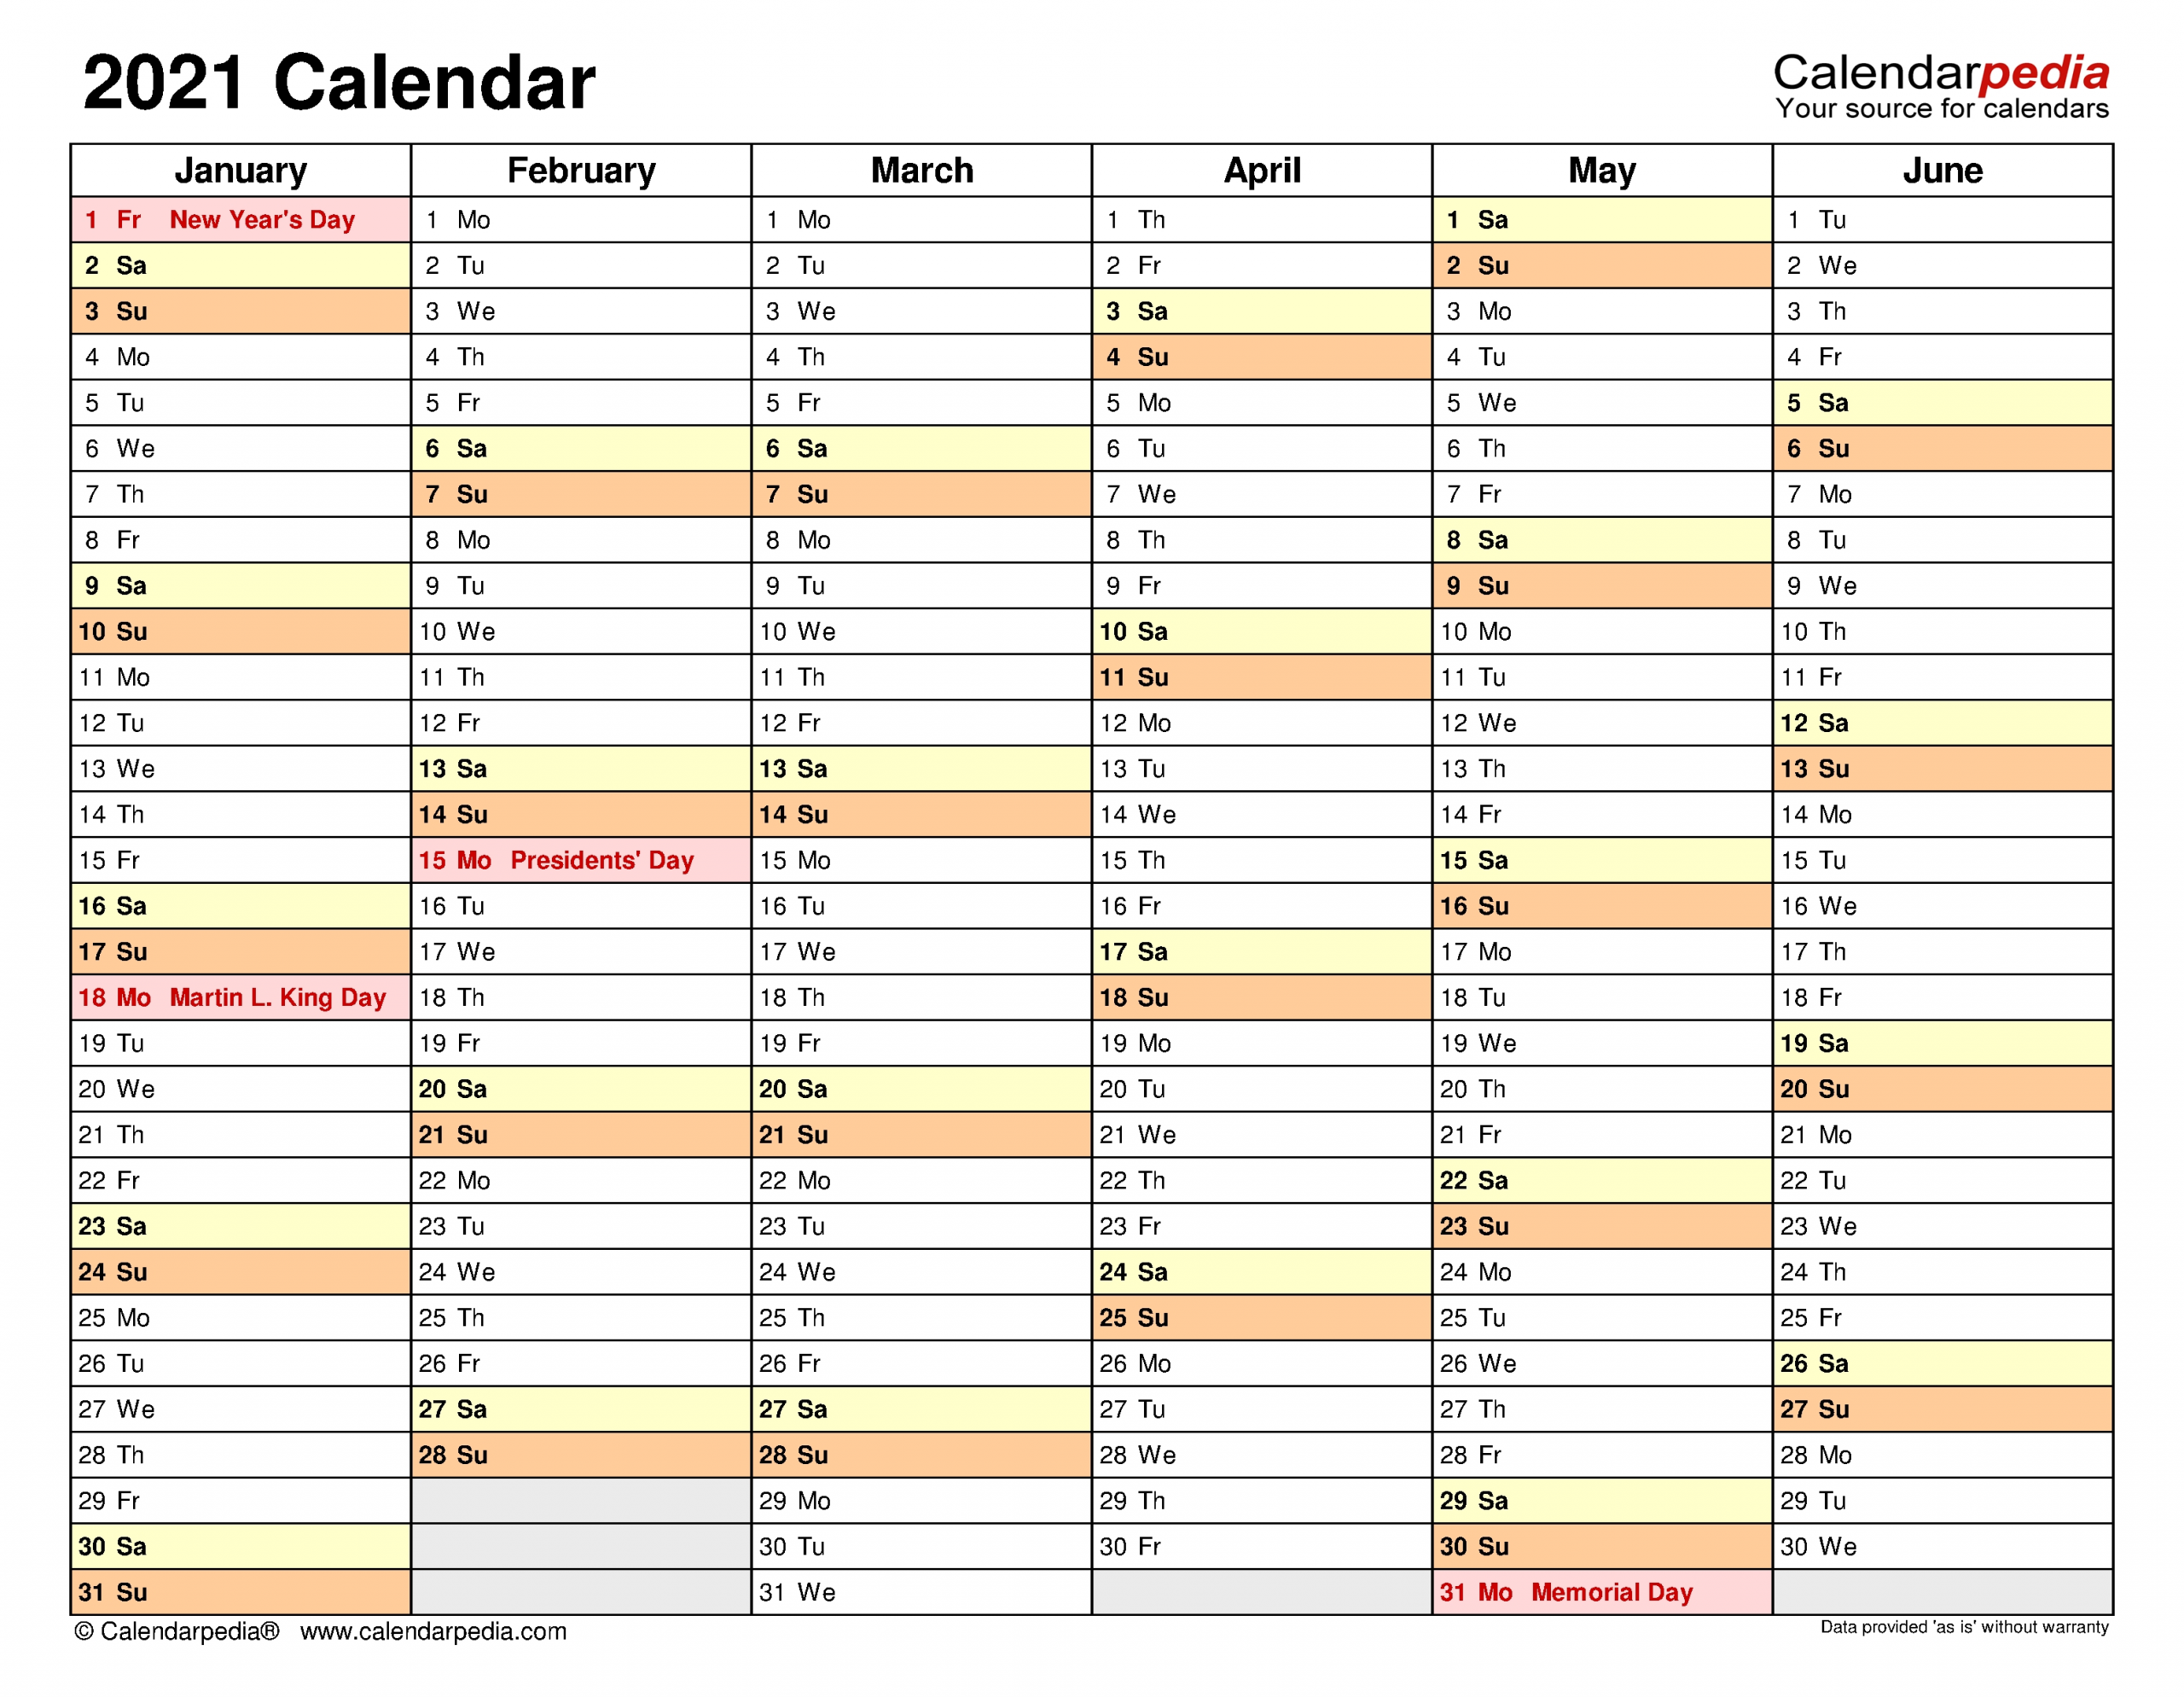 2021 Calendar - Free Printable Excel Templates - Calendarpedia-2021 Calendar In Excel By Week